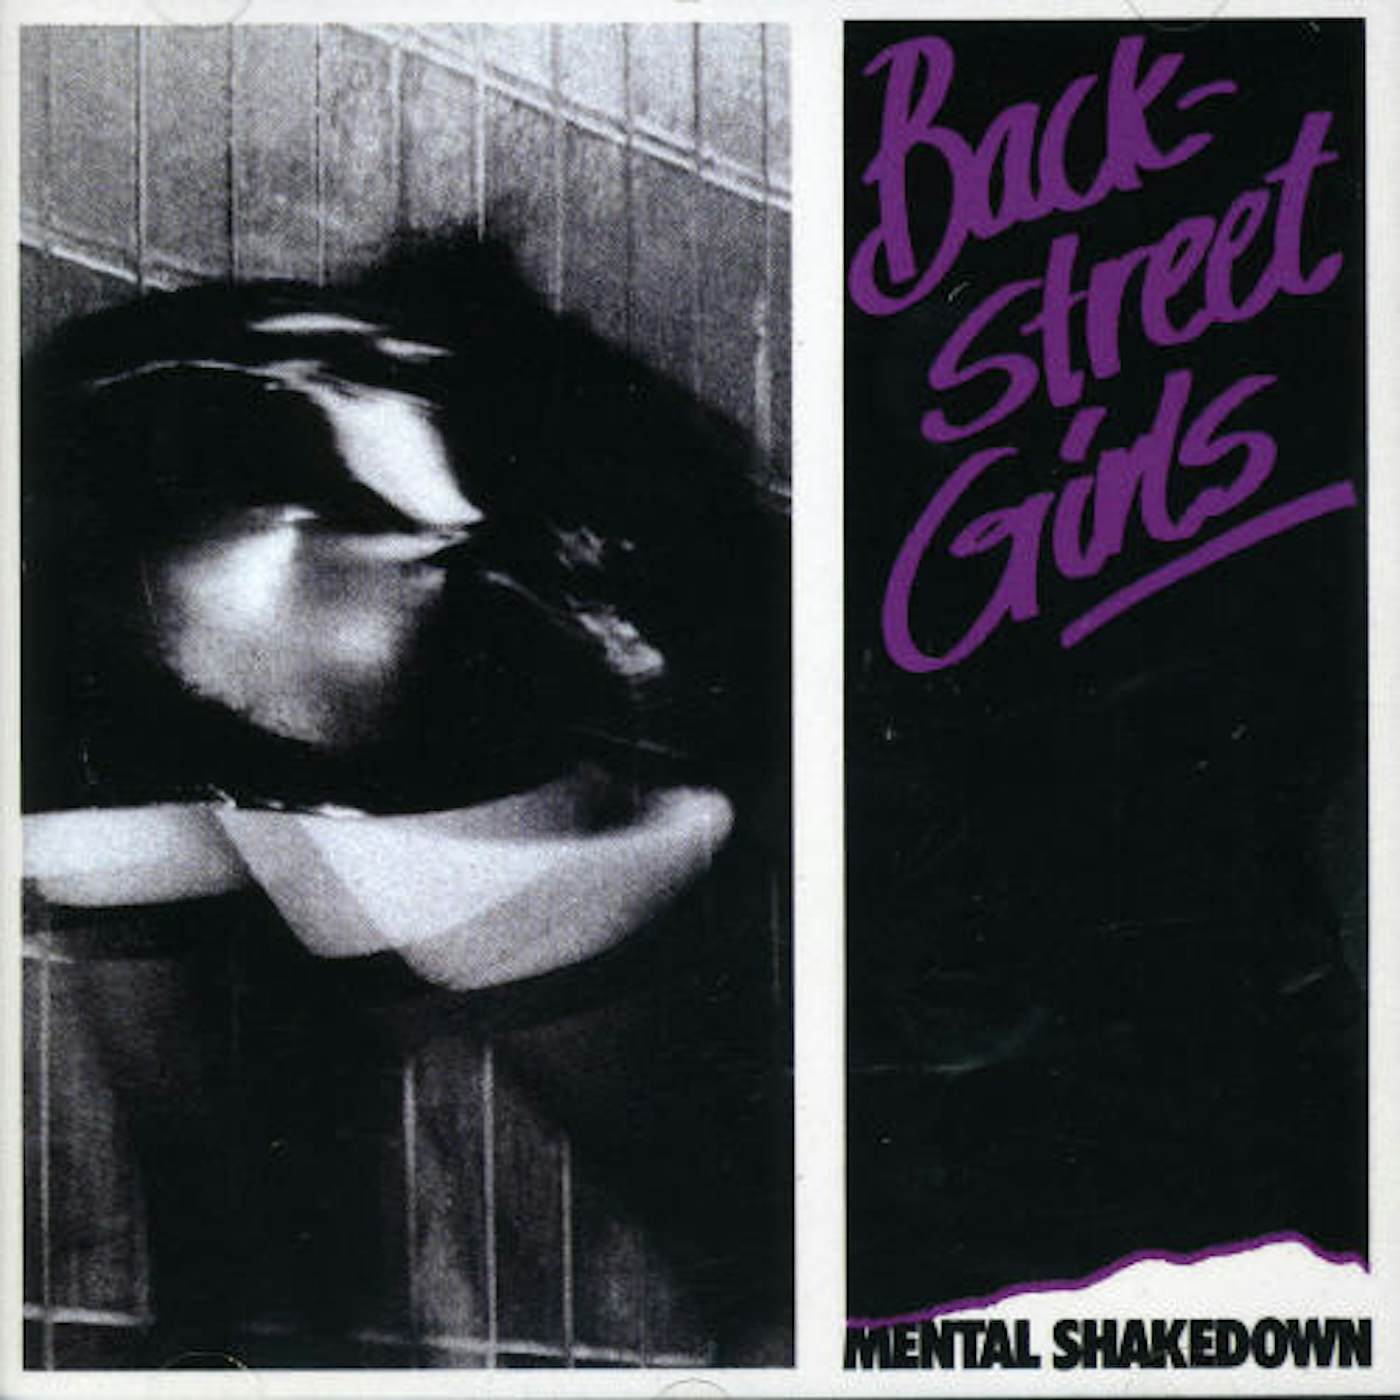 Backstreet Girls MENTAL SHAKEDOWN CD